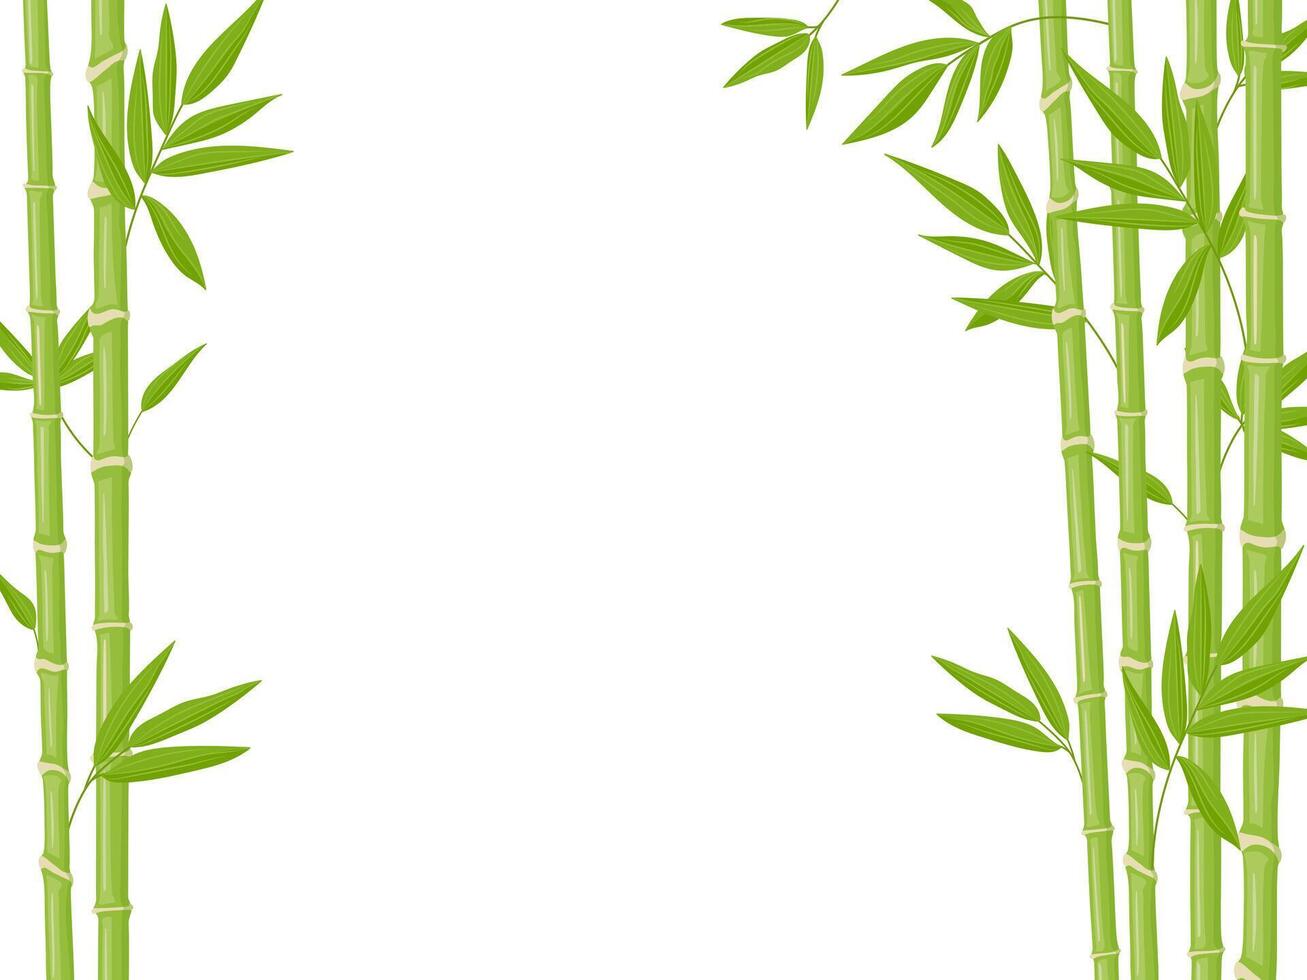 bambu bakgrund. asiatisk färsk grön bambu stjälkar, naturlig bambu växt bakgrund, pinne växter med lövverk vektor illustration